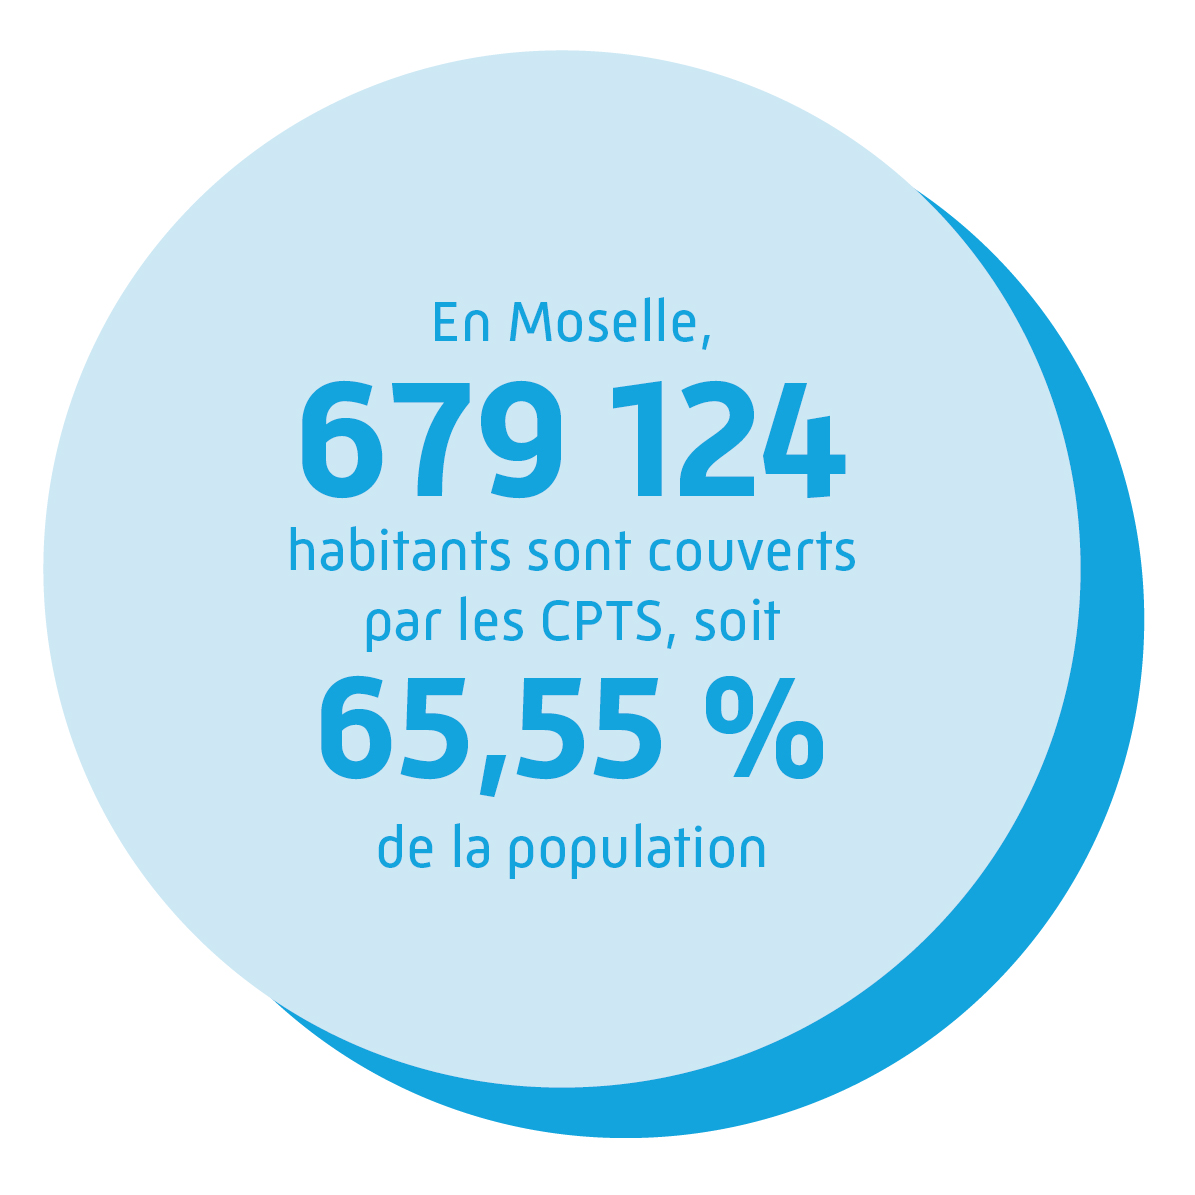 En Moselle, 679 124 habitants sont couverts par les CPTS, soit 65,55 % de la population.